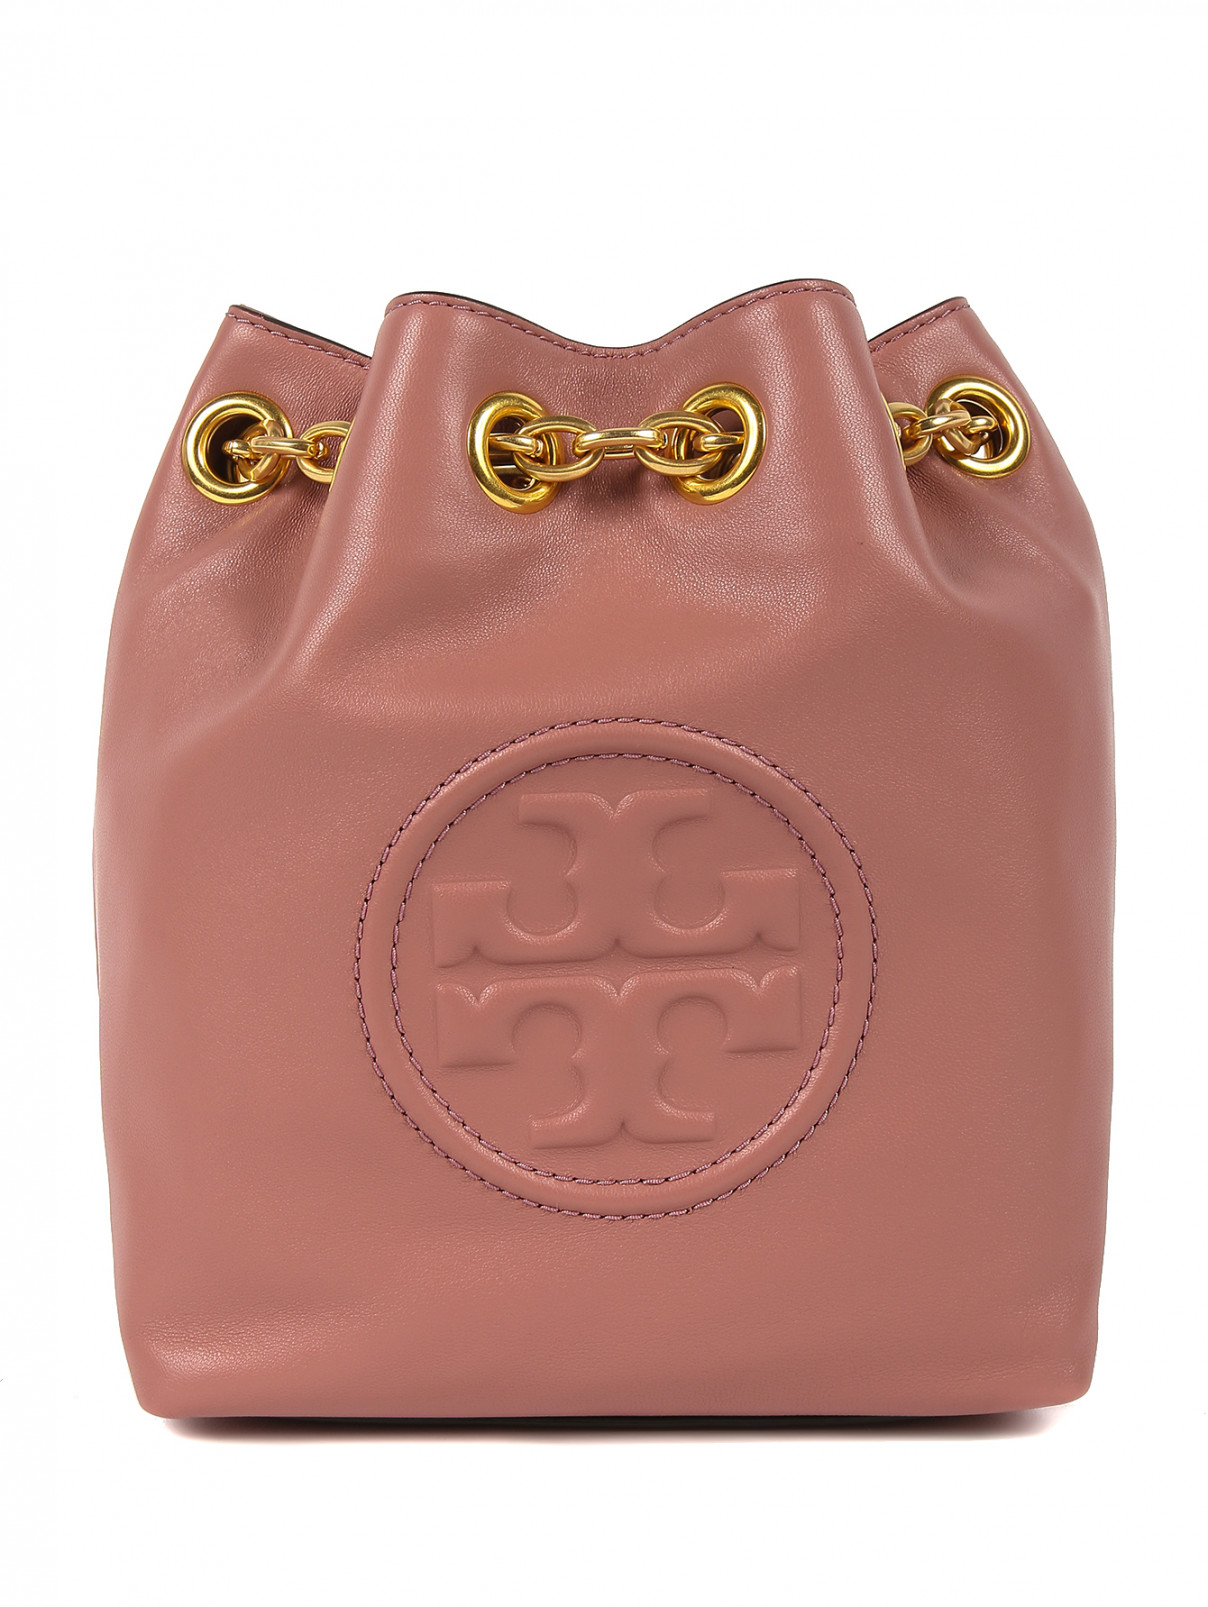 Сумка-рюкзак из кожи с золотой фурнитурой Tory Burch  –  Общий вид  – Цвет:  Розовый